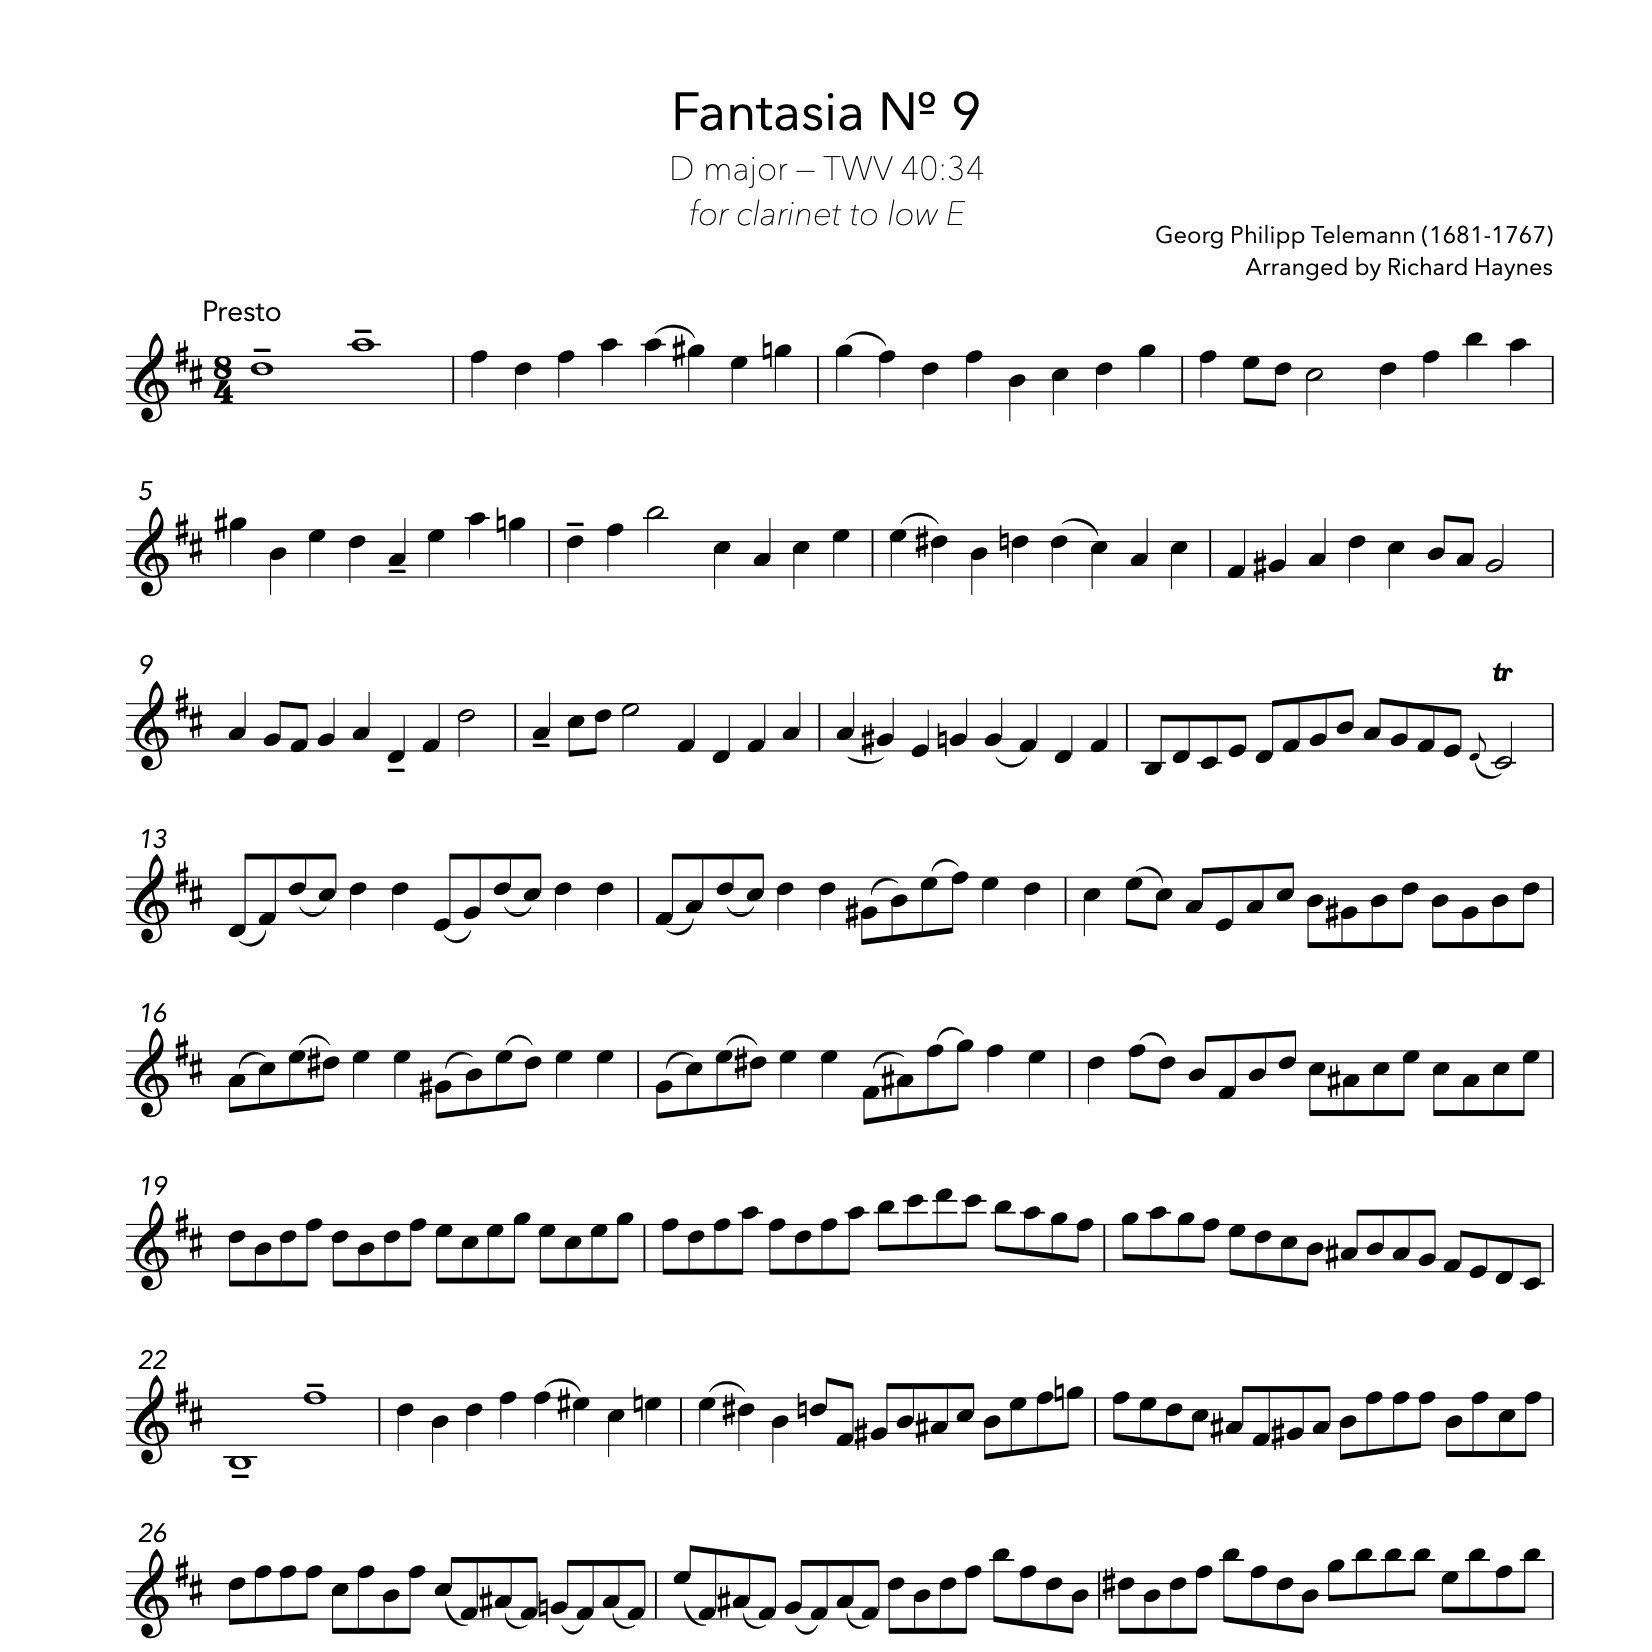 Bass+Viol+Fantasia+No+9+Telemann%3AHaynes+4.jpg